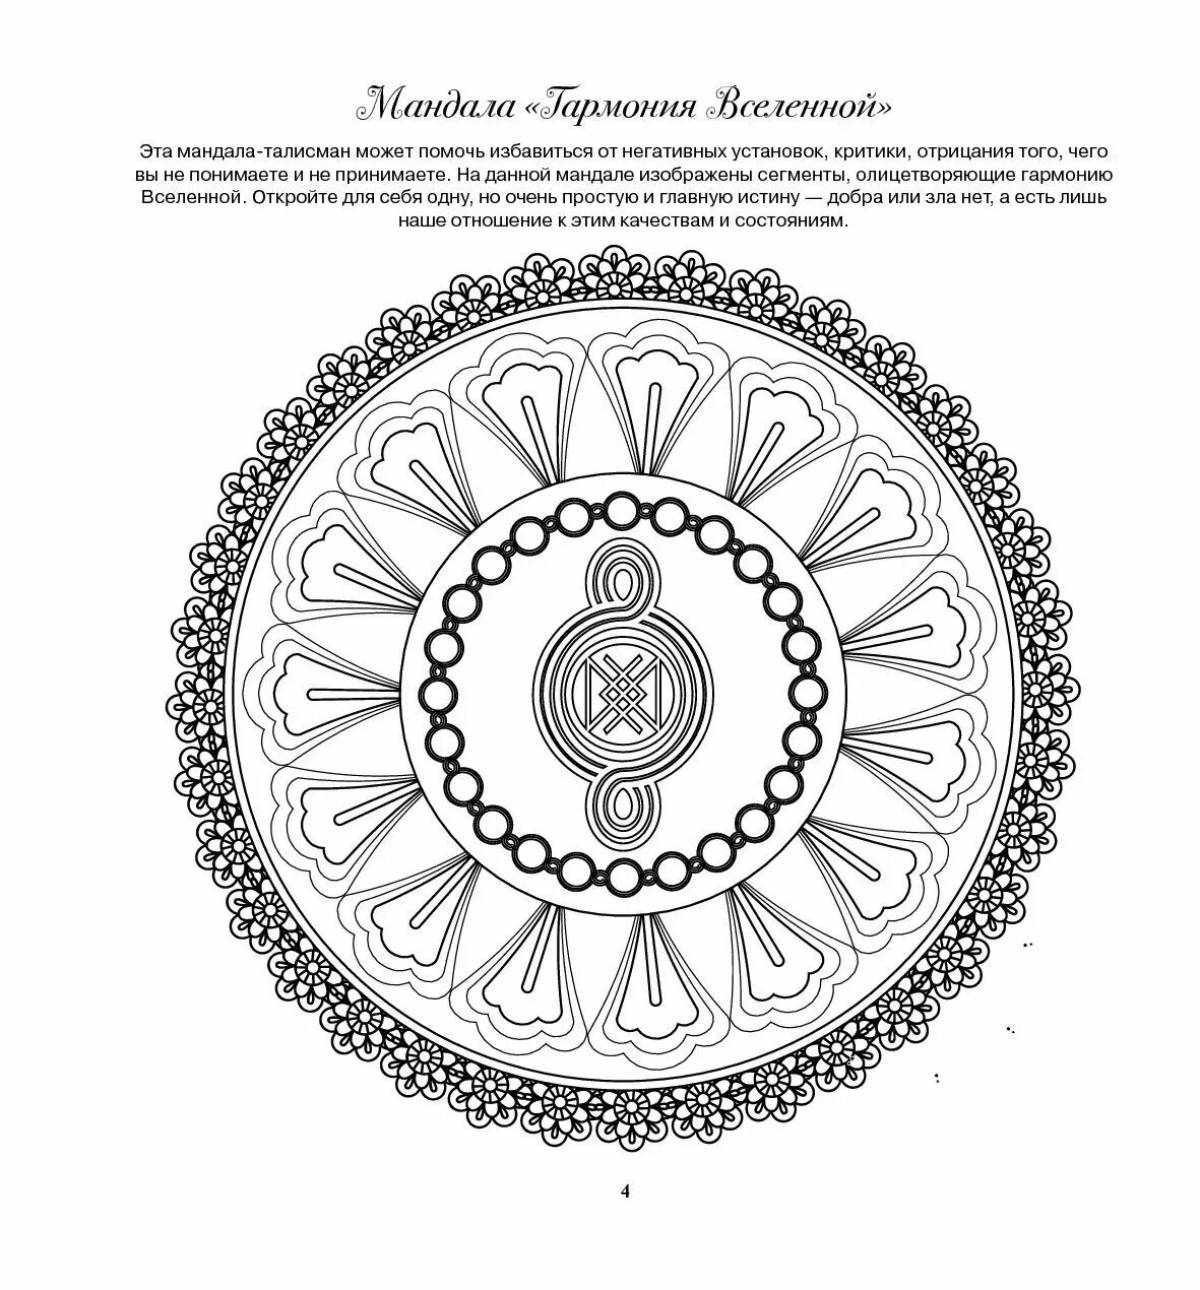 Mandala image meaning #7